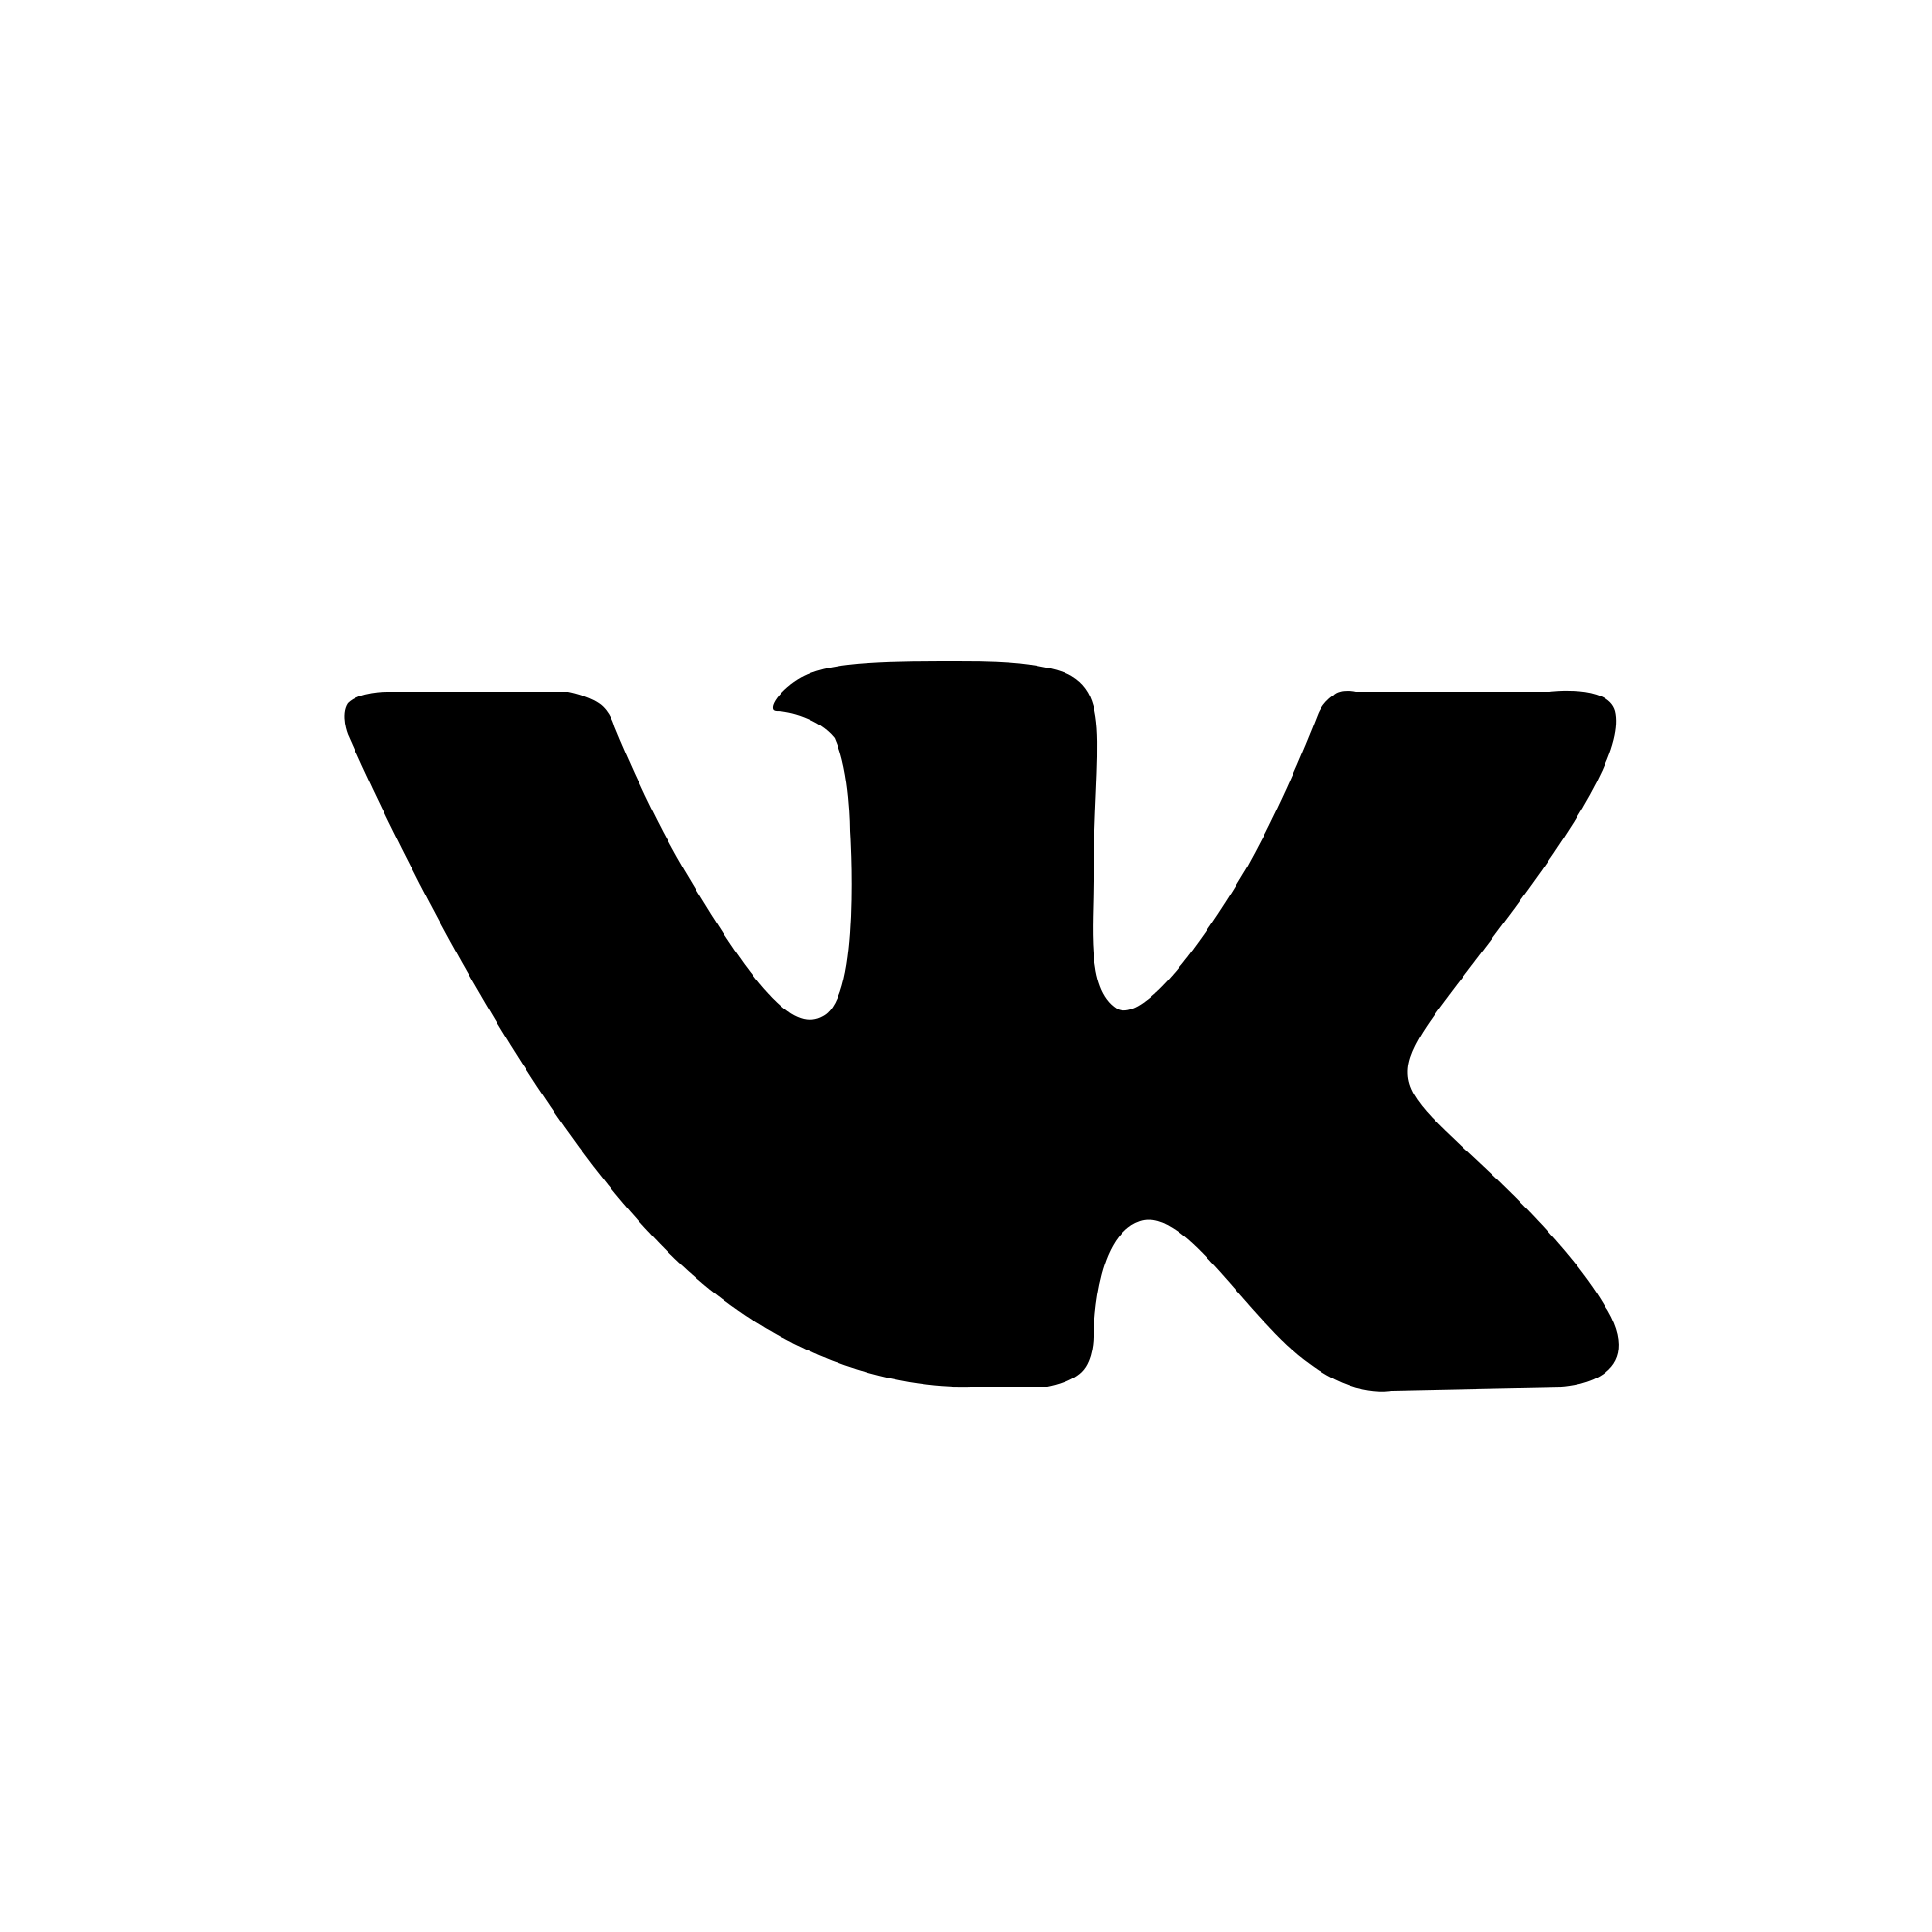 Логотип вк черный. Логотип ВК. Значок Dr. Значок ВК для фотошопа.